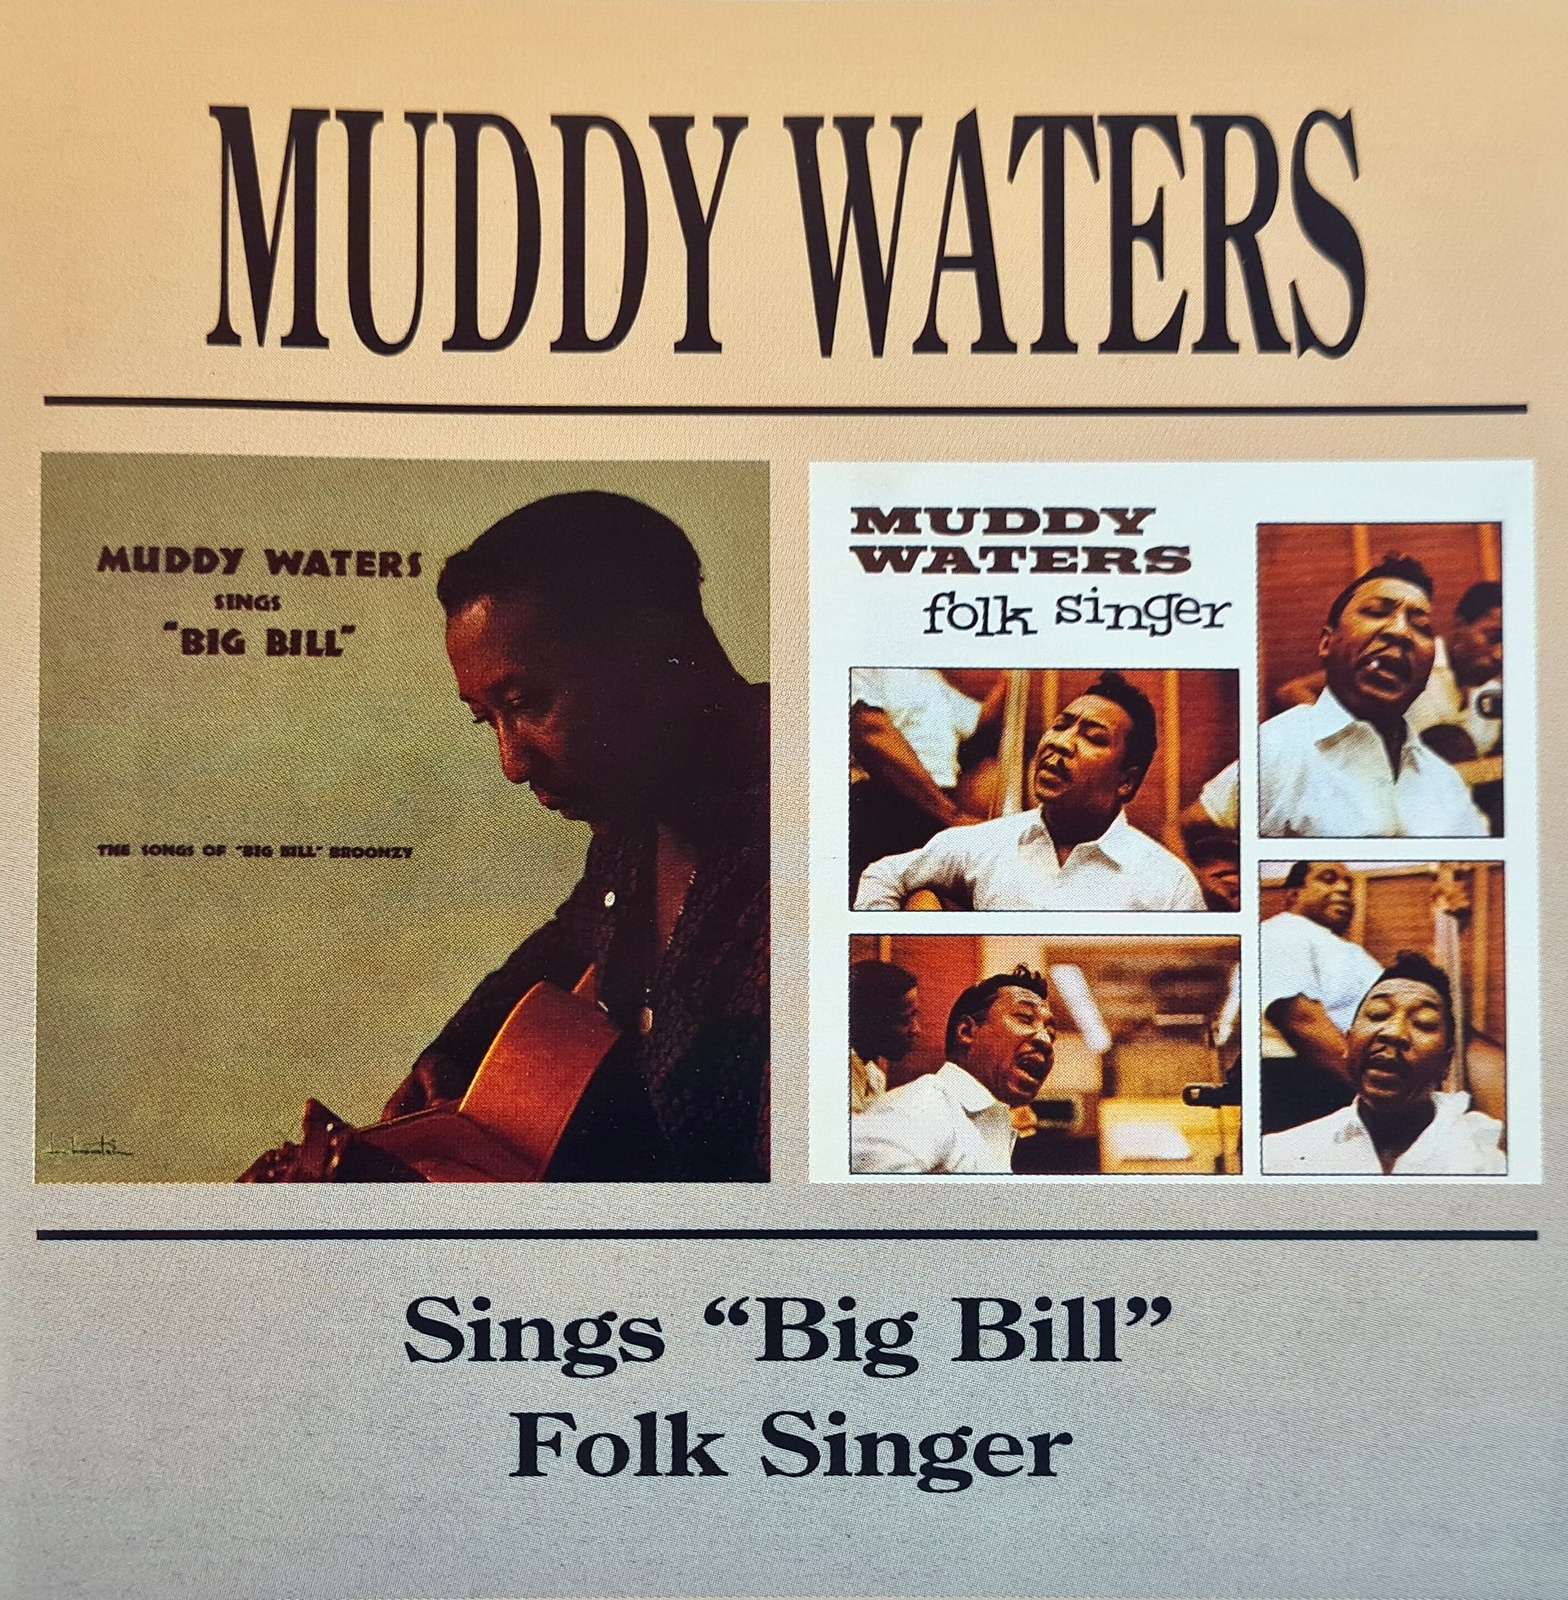 Muddy Waters - Sings "Big Bill" - Folk Singer (CD)